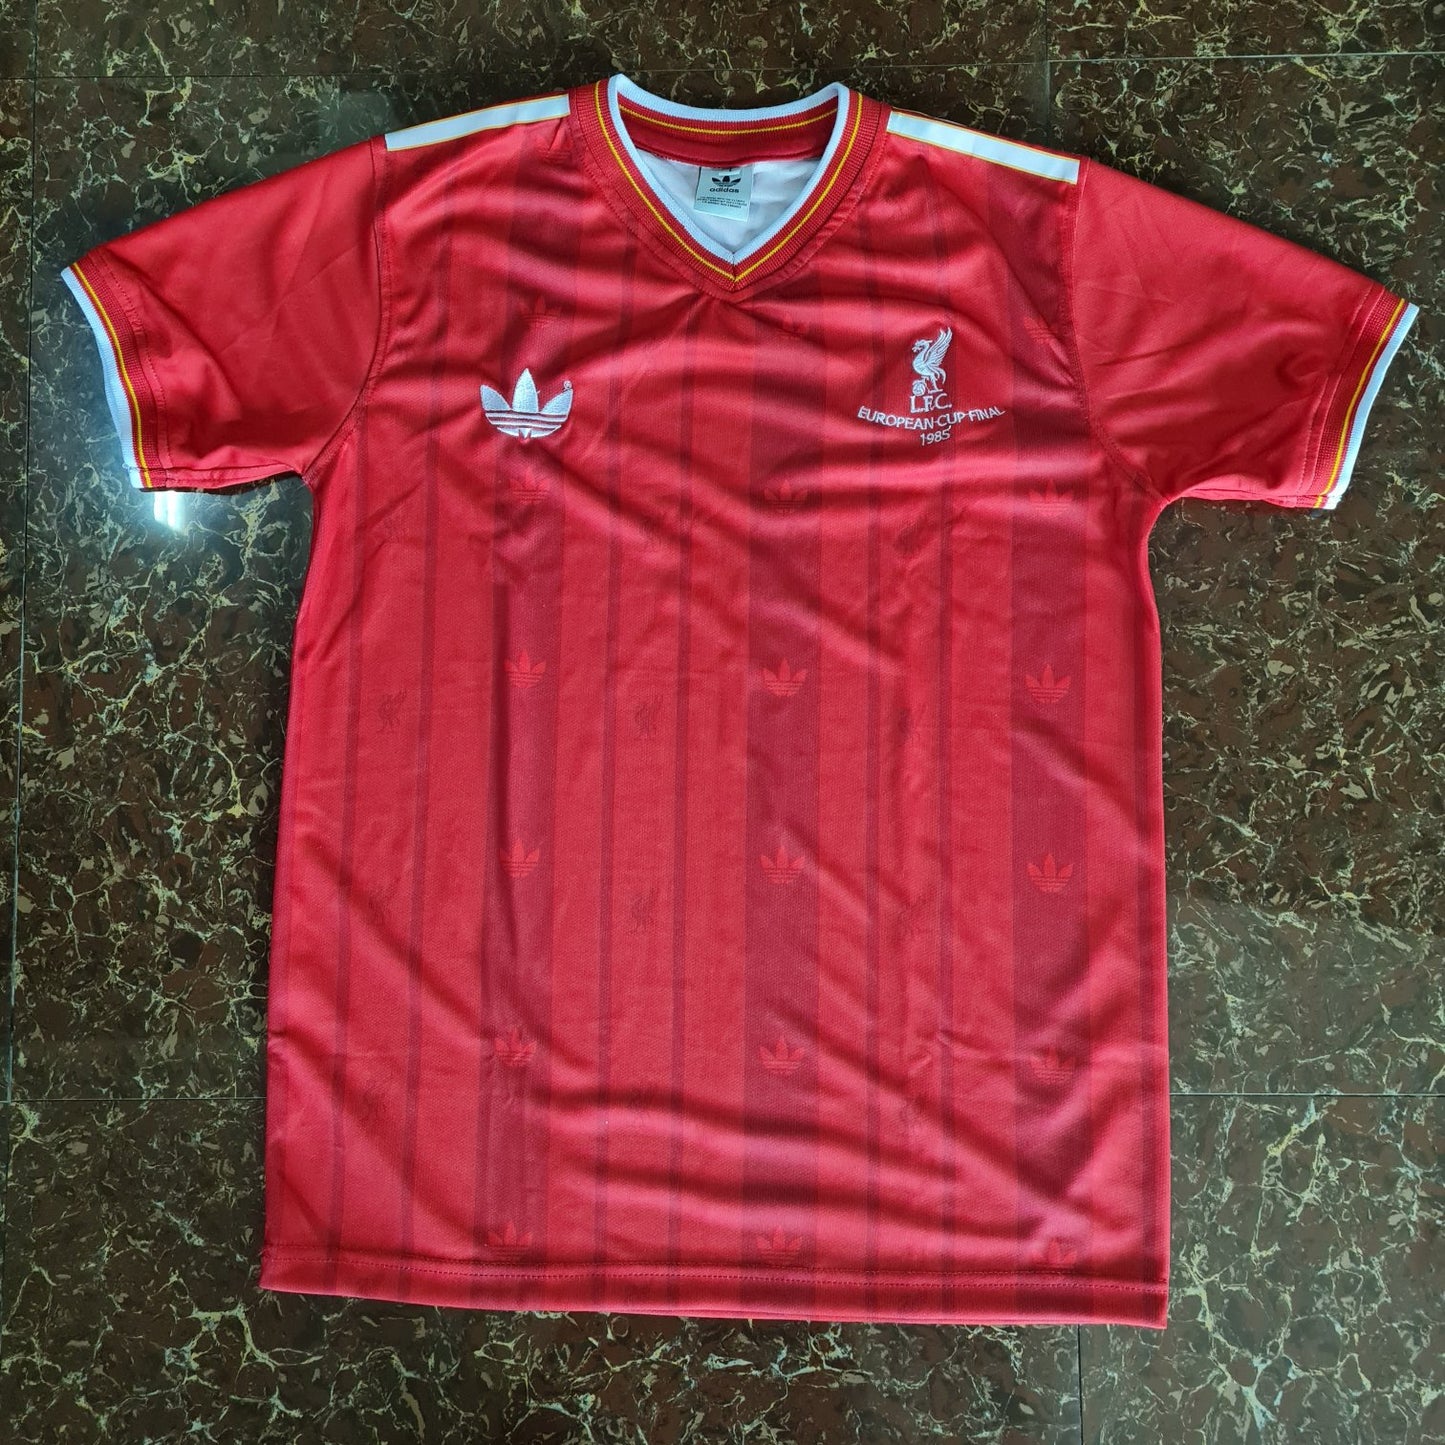 1985 Liverpool European Cup Final Shirt